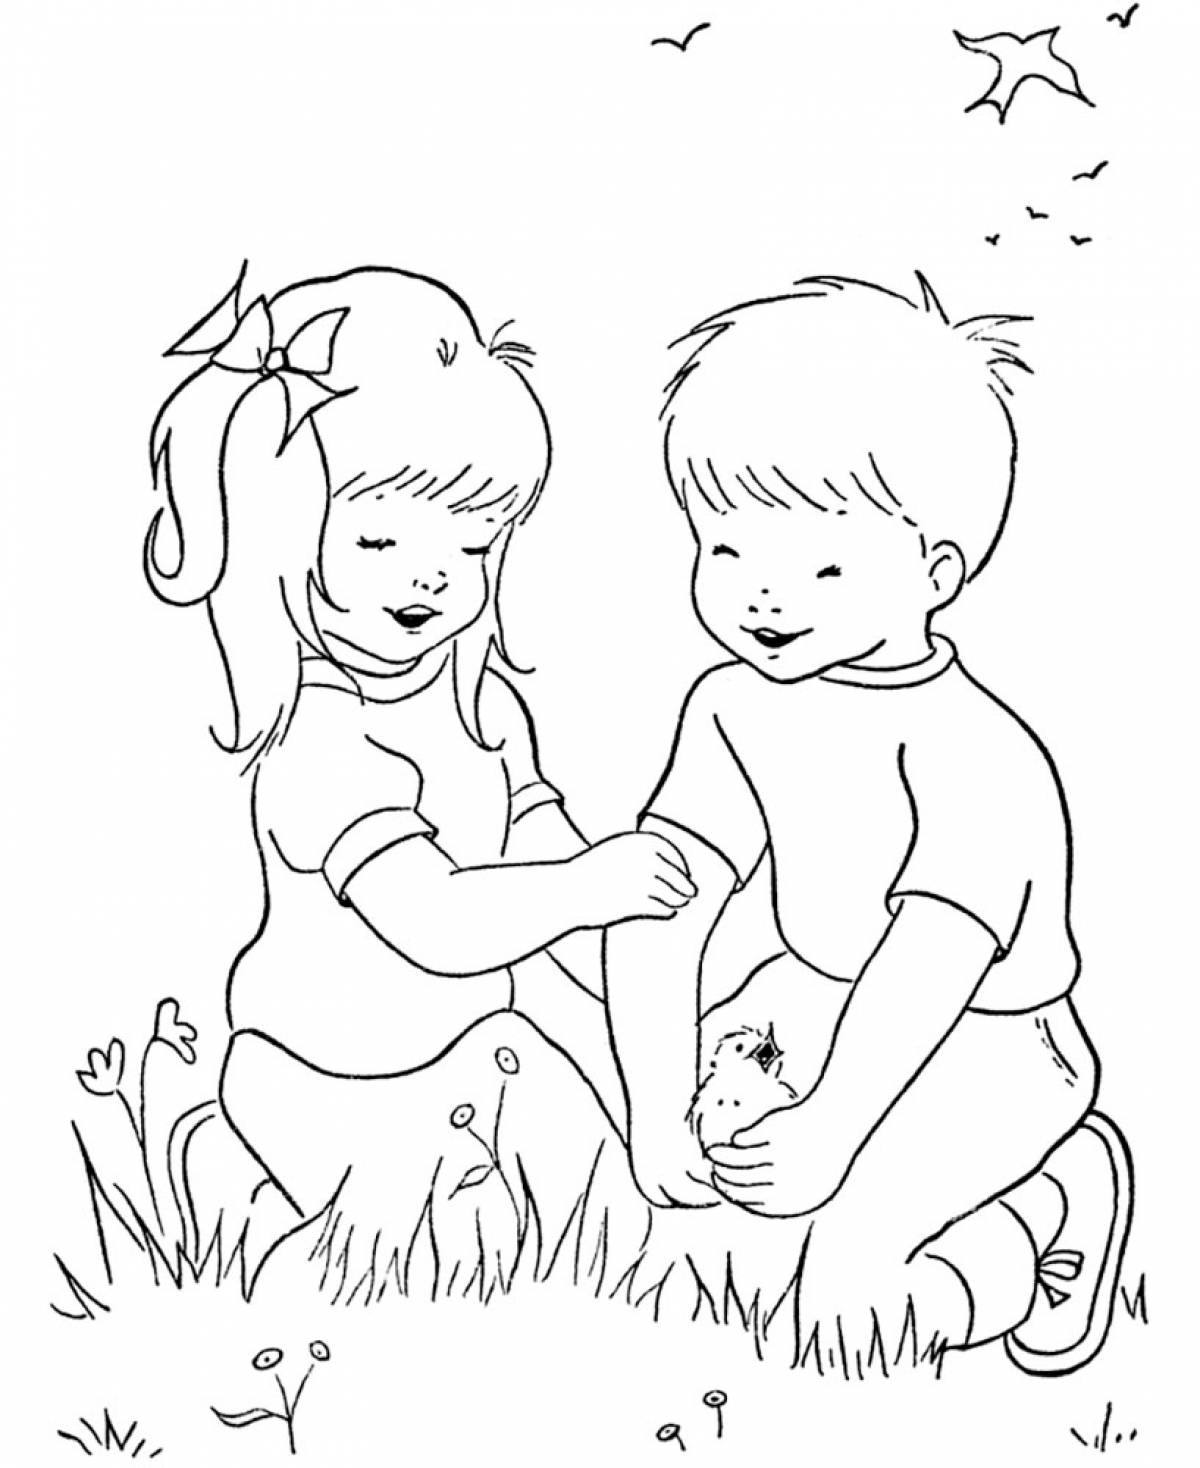 Девочка и мальчик на траве